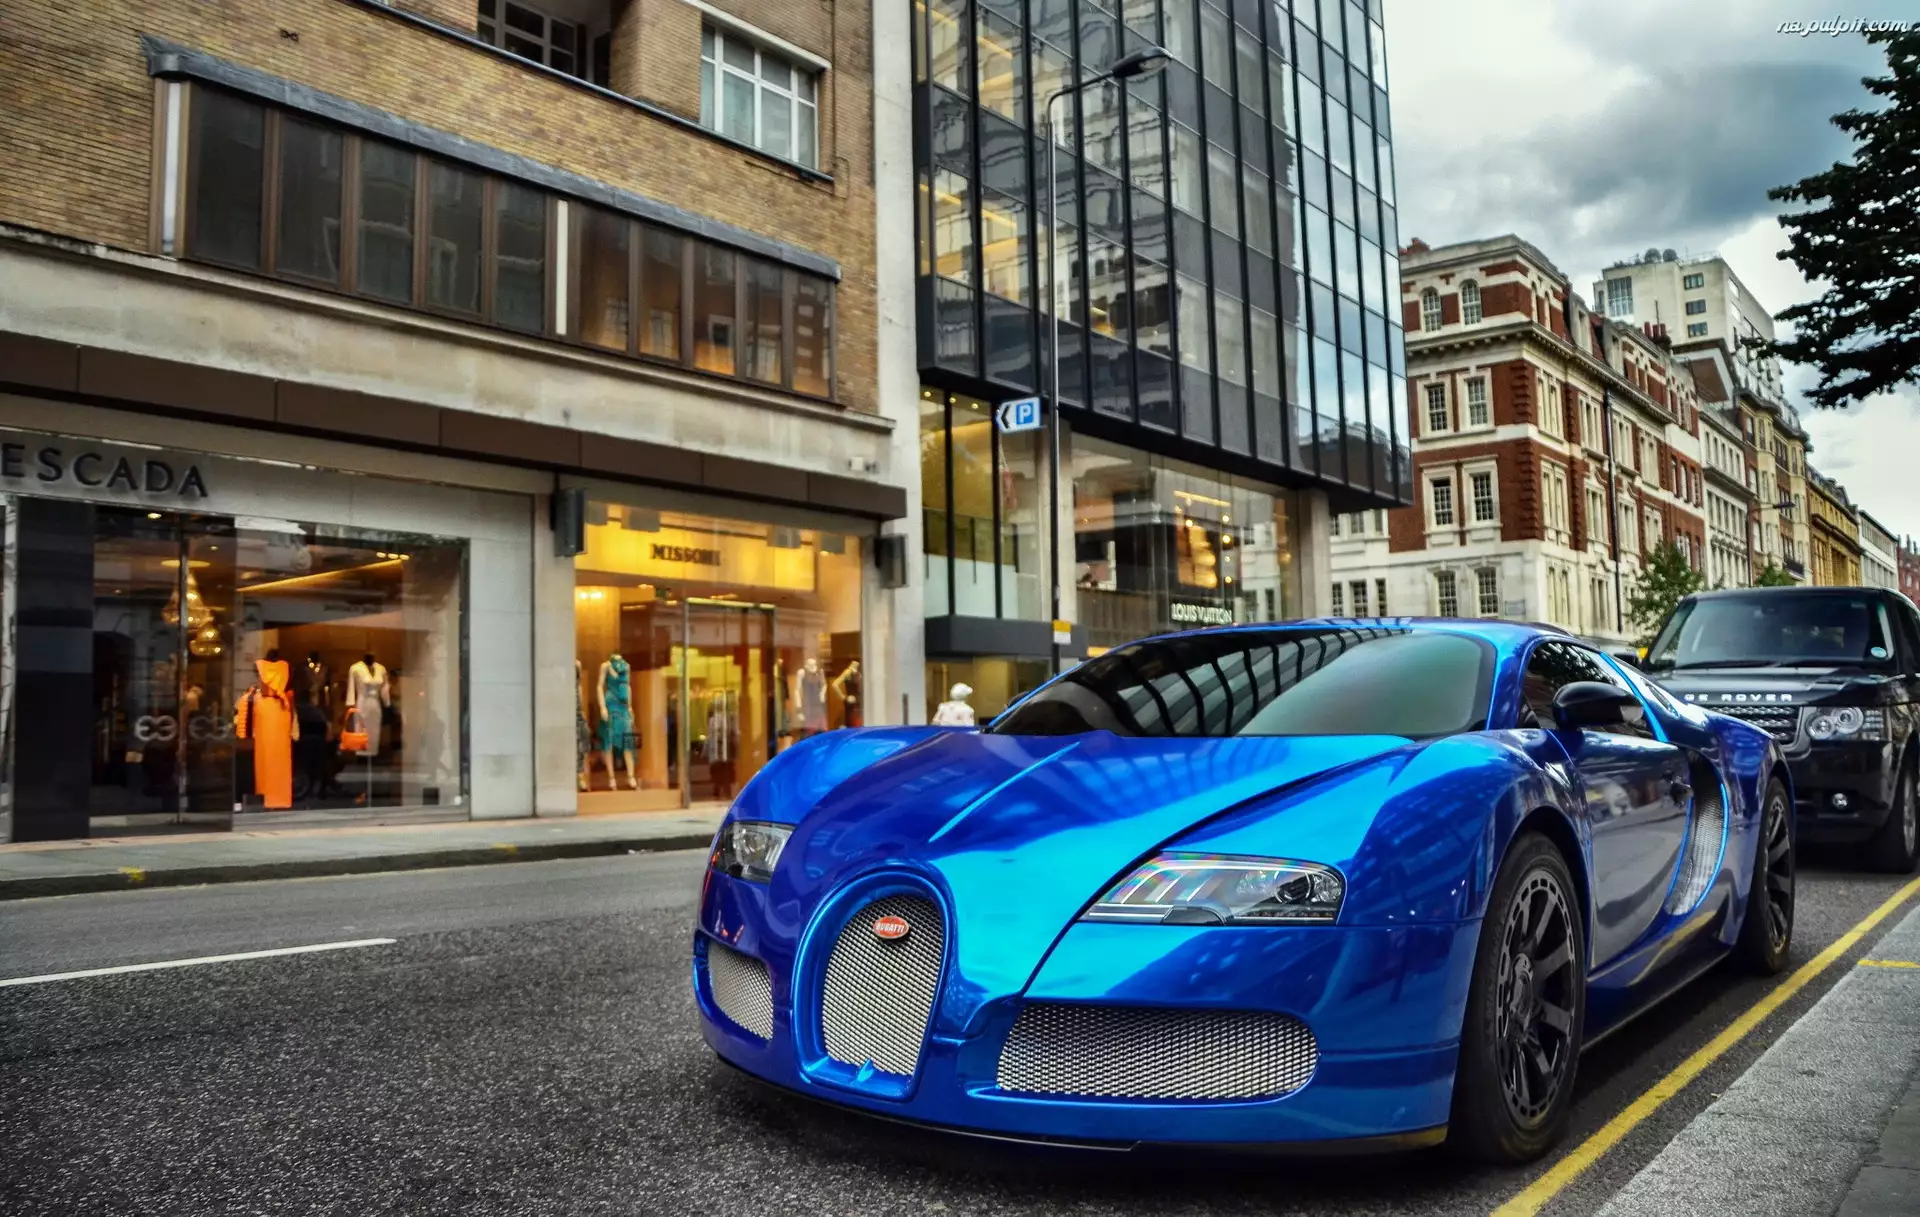 Ulica, Auto, Bugatti Veyron